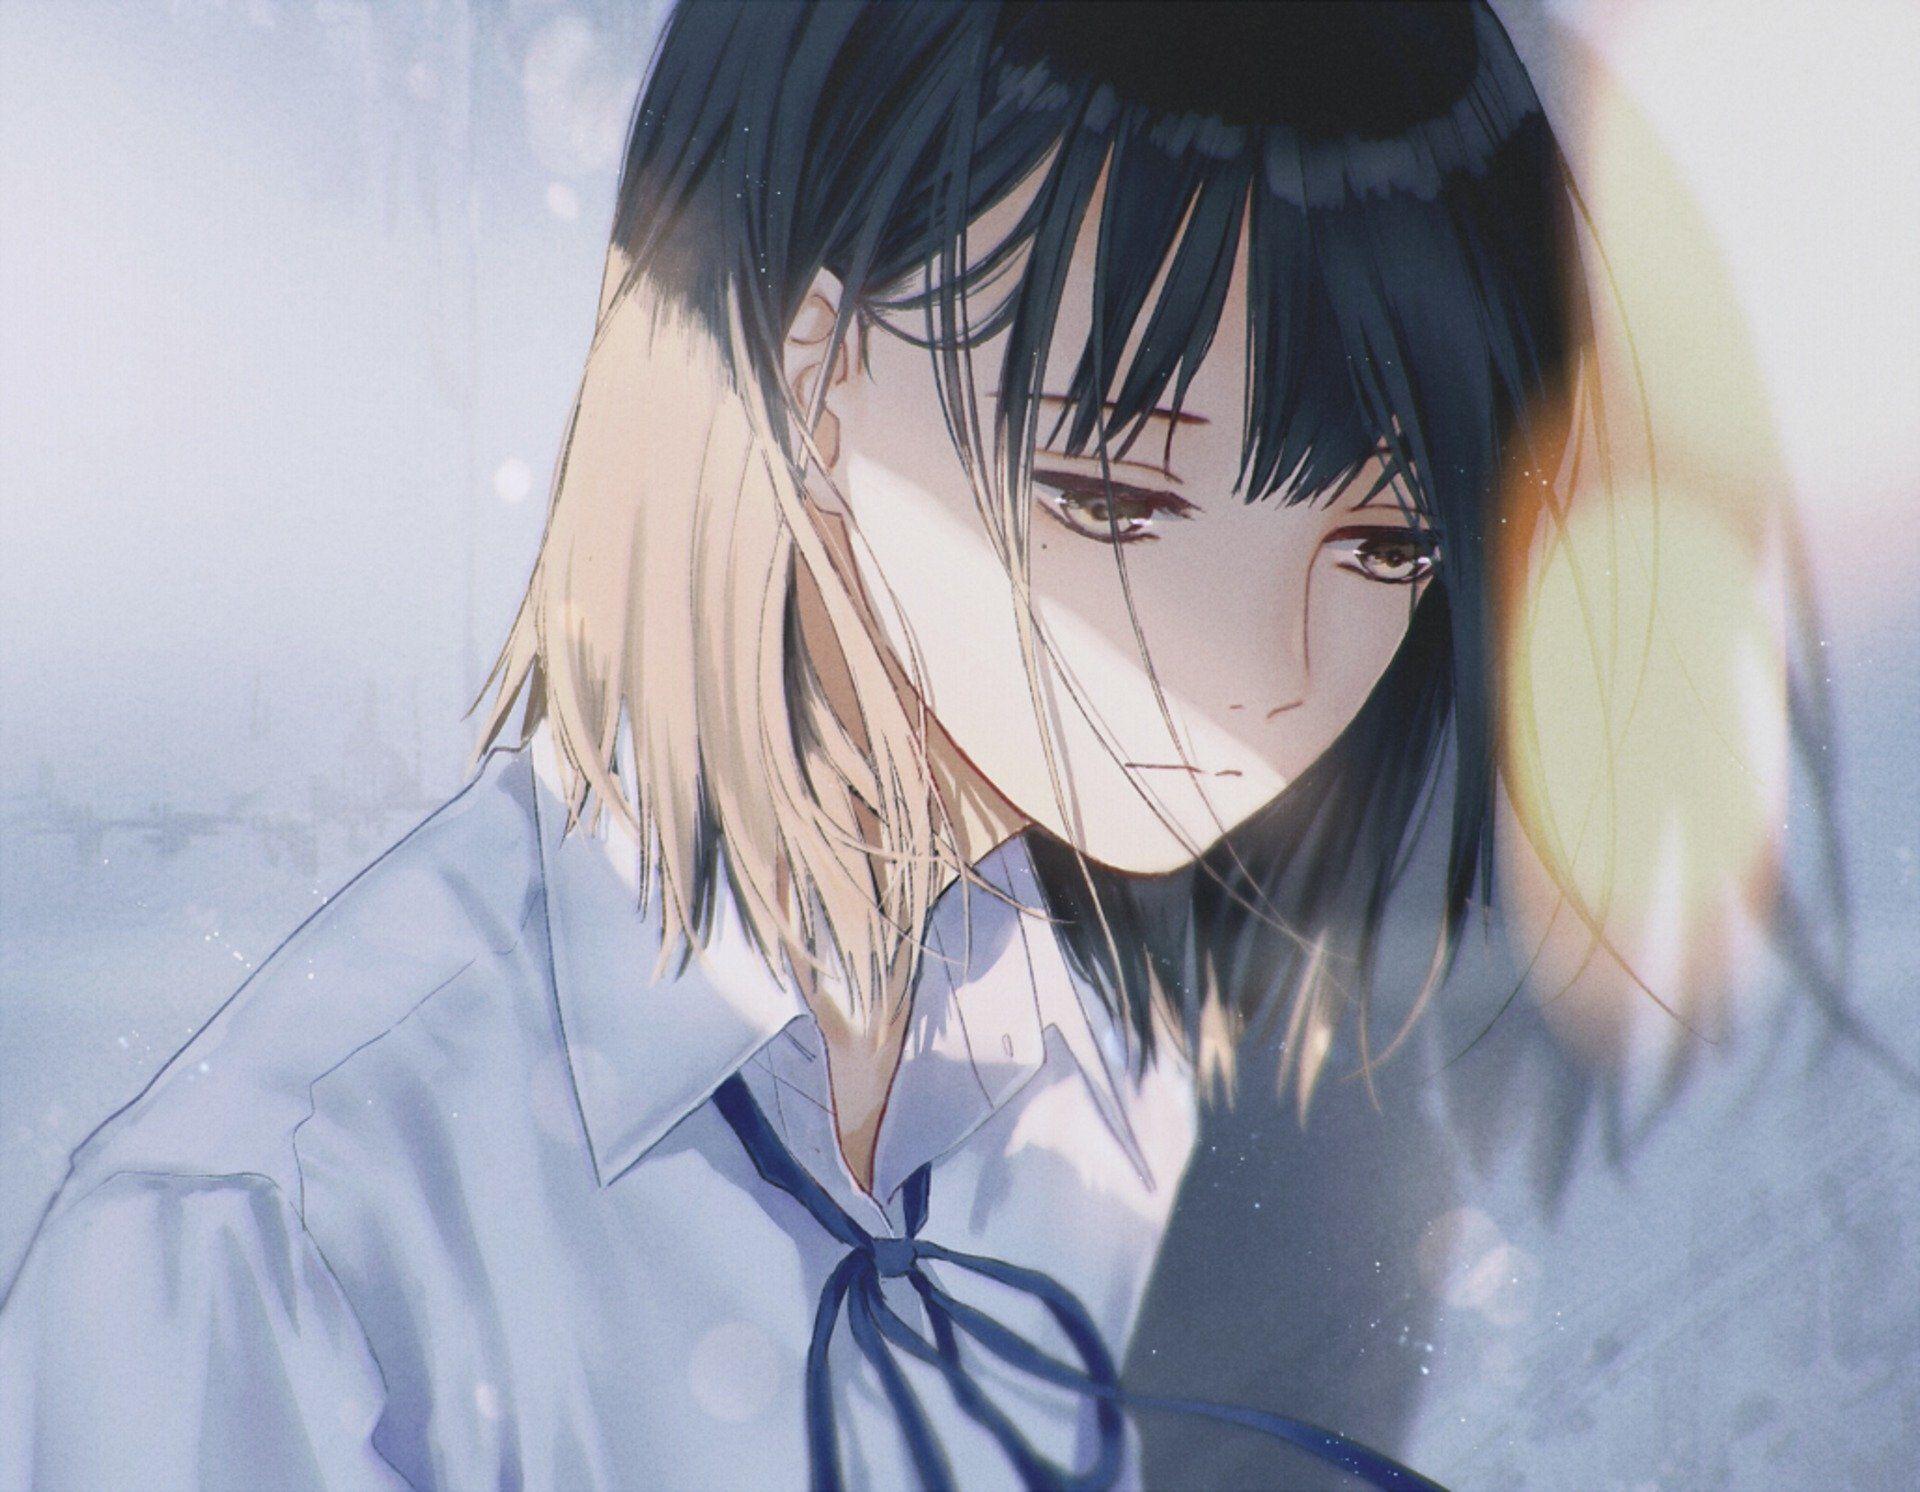 Sad girl anime avatar: Những cảm xúc thăng trầm của Sad Girl thật khó tả qua các biểu cảm trên avatar anime này. Tuy nhiên, đôi lúc đau khổ cũng là cơ hội để ta tìm ra điều mới mẻ trong cuộc sống. Xem avatar anime này để tìm hiểu thêm về câu chuyện cuộc đời người tràn đầy cảm xúc.